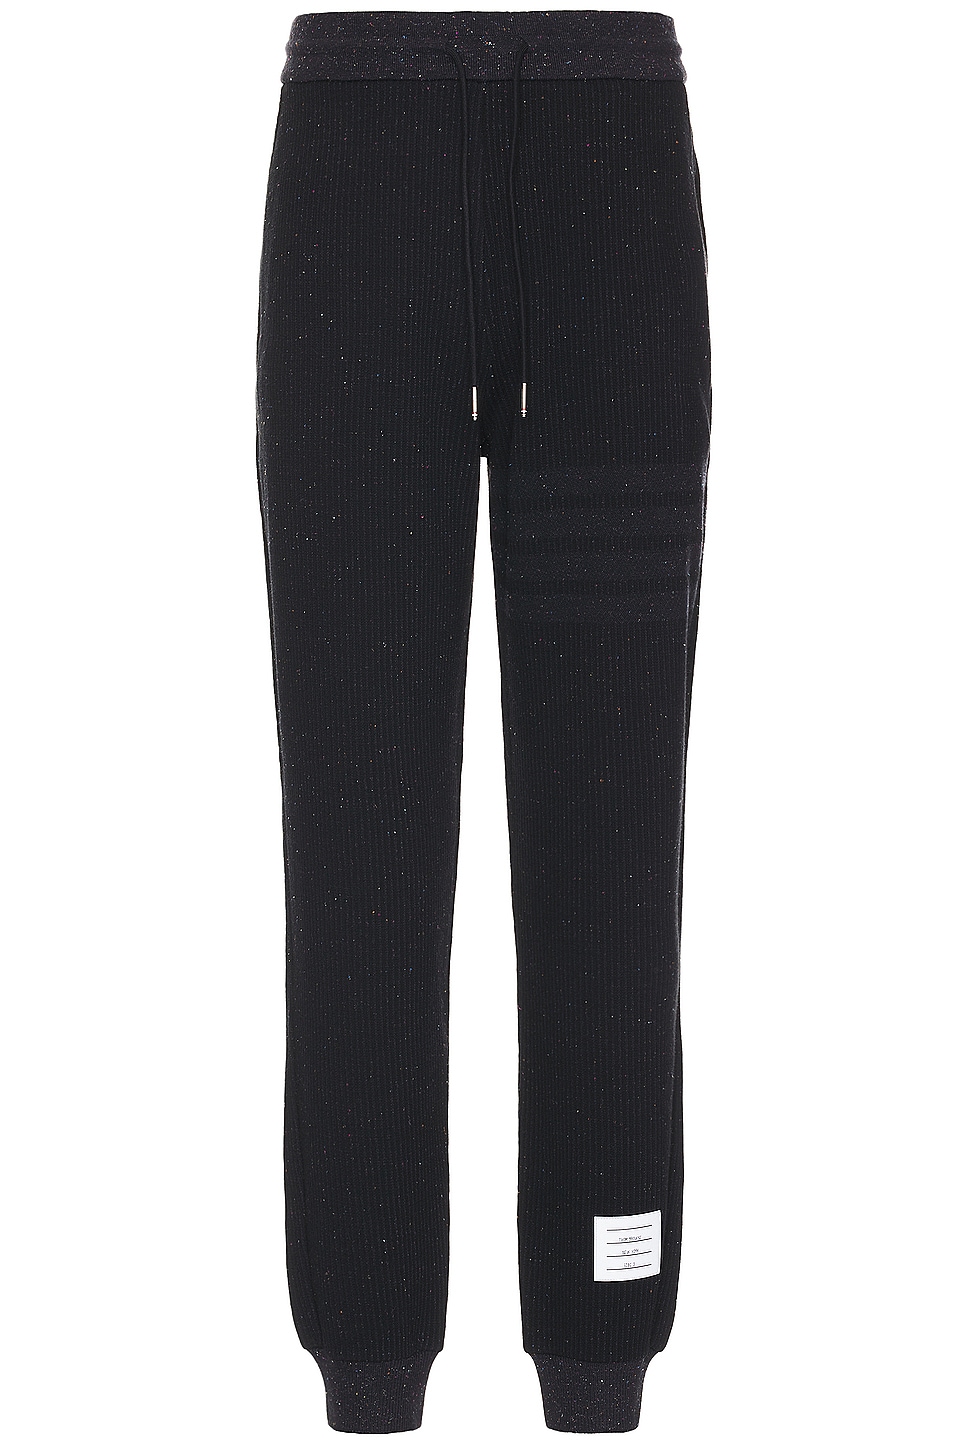 Image 1 of Thom Browne Sweatpants in Black